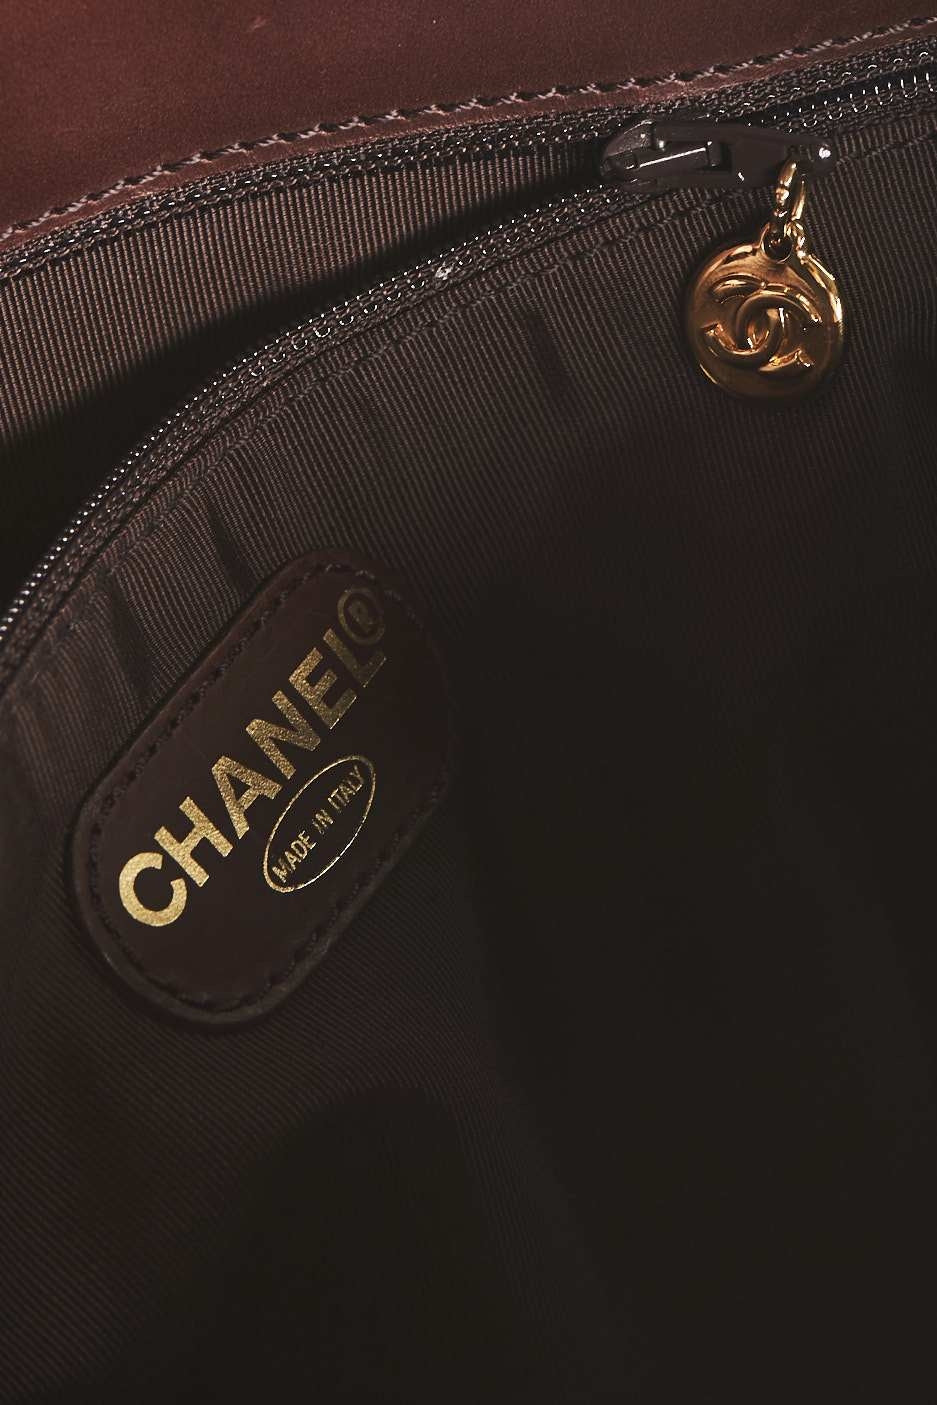 Chanel Women shopping Bag